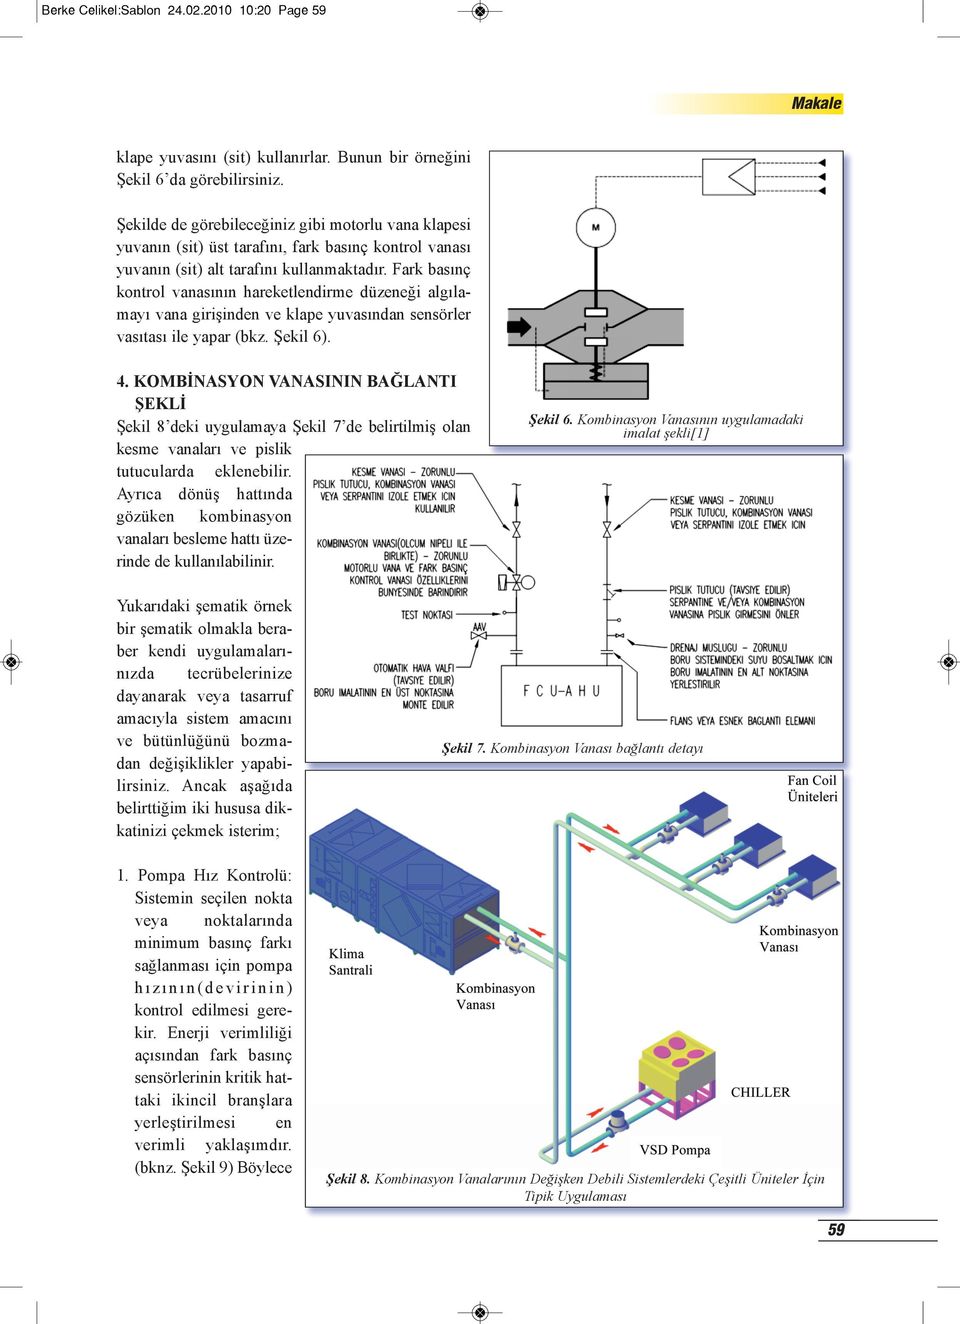 Fark basınç kontrol vanasının hareketlendirme düzeneği algılamayı vana girişinden ve klape yuvasından sensörler vasıtası ile yapar (bkz. Şekil 6). 4.